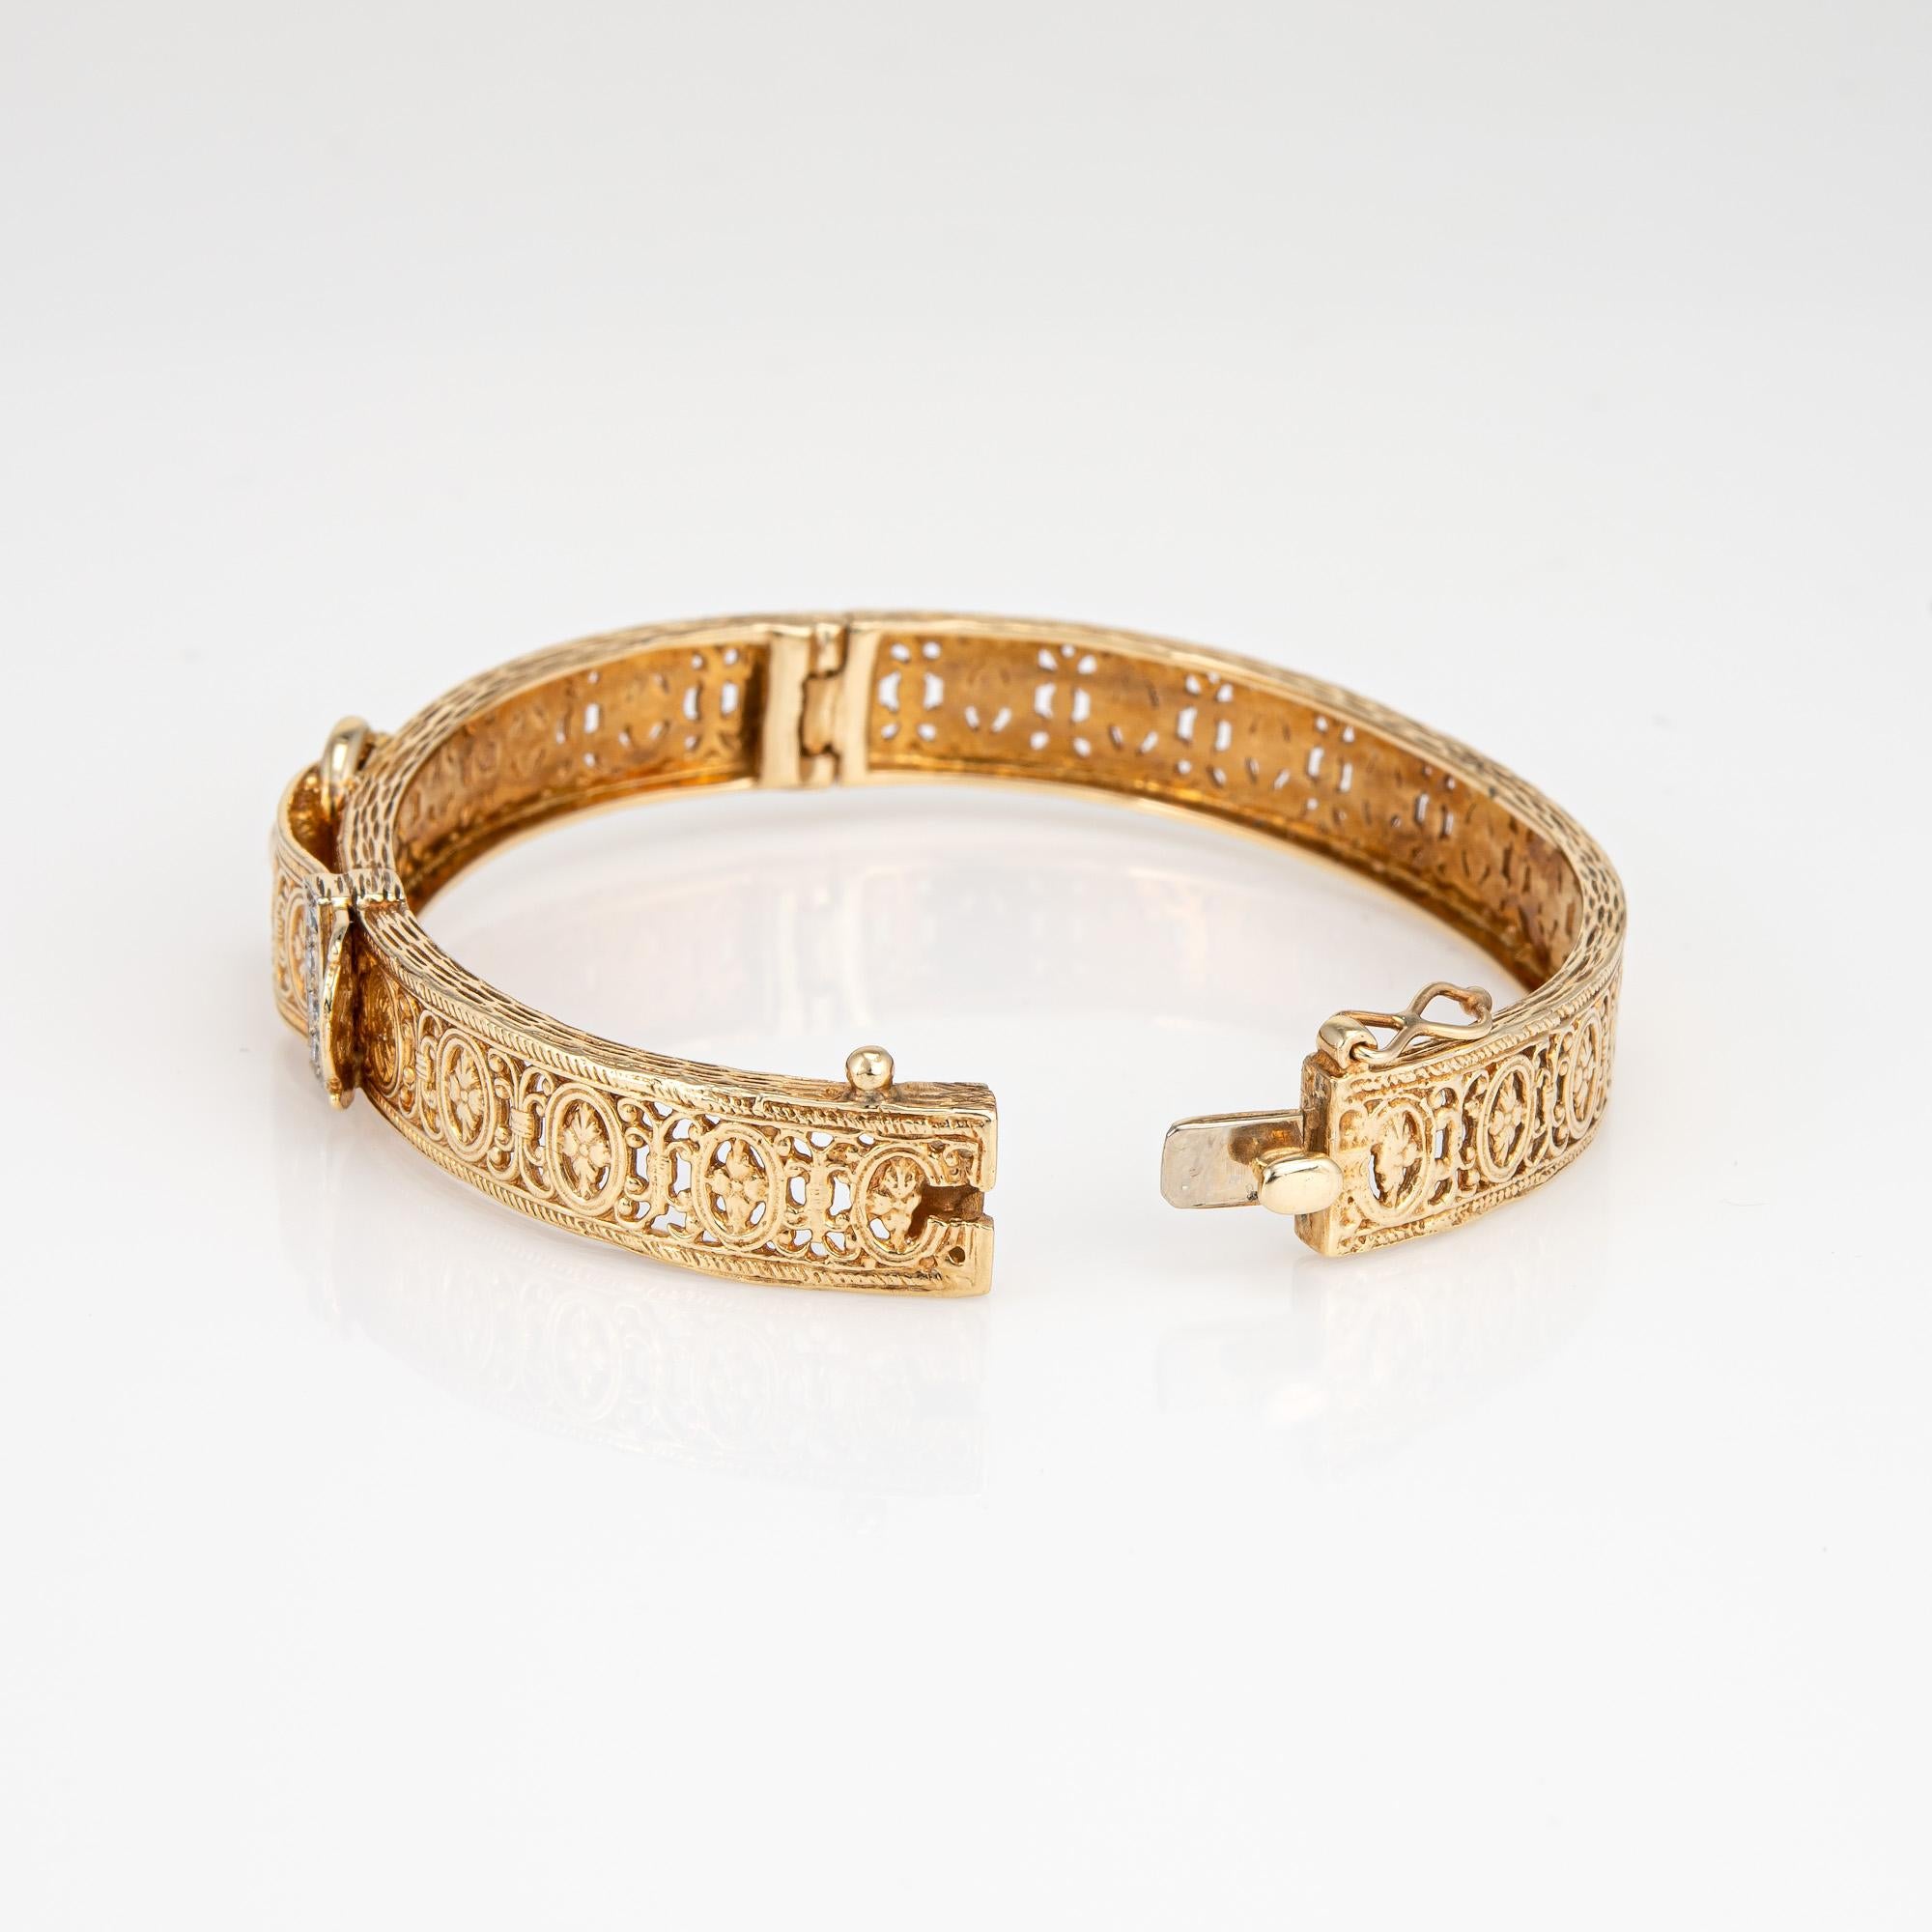 Stilvolles und detailreiches Vintage-Armband mit Schnalle aus 14 Karat Gelbgold. 

Vier Diamanten mit einem geschätzten Gesamtgewicht von 0,08 Karat (Farbe H-I und Reinheit VS2-SI1). 

Der Armreif zeichnet sich durch ein kunstvolles Design mit